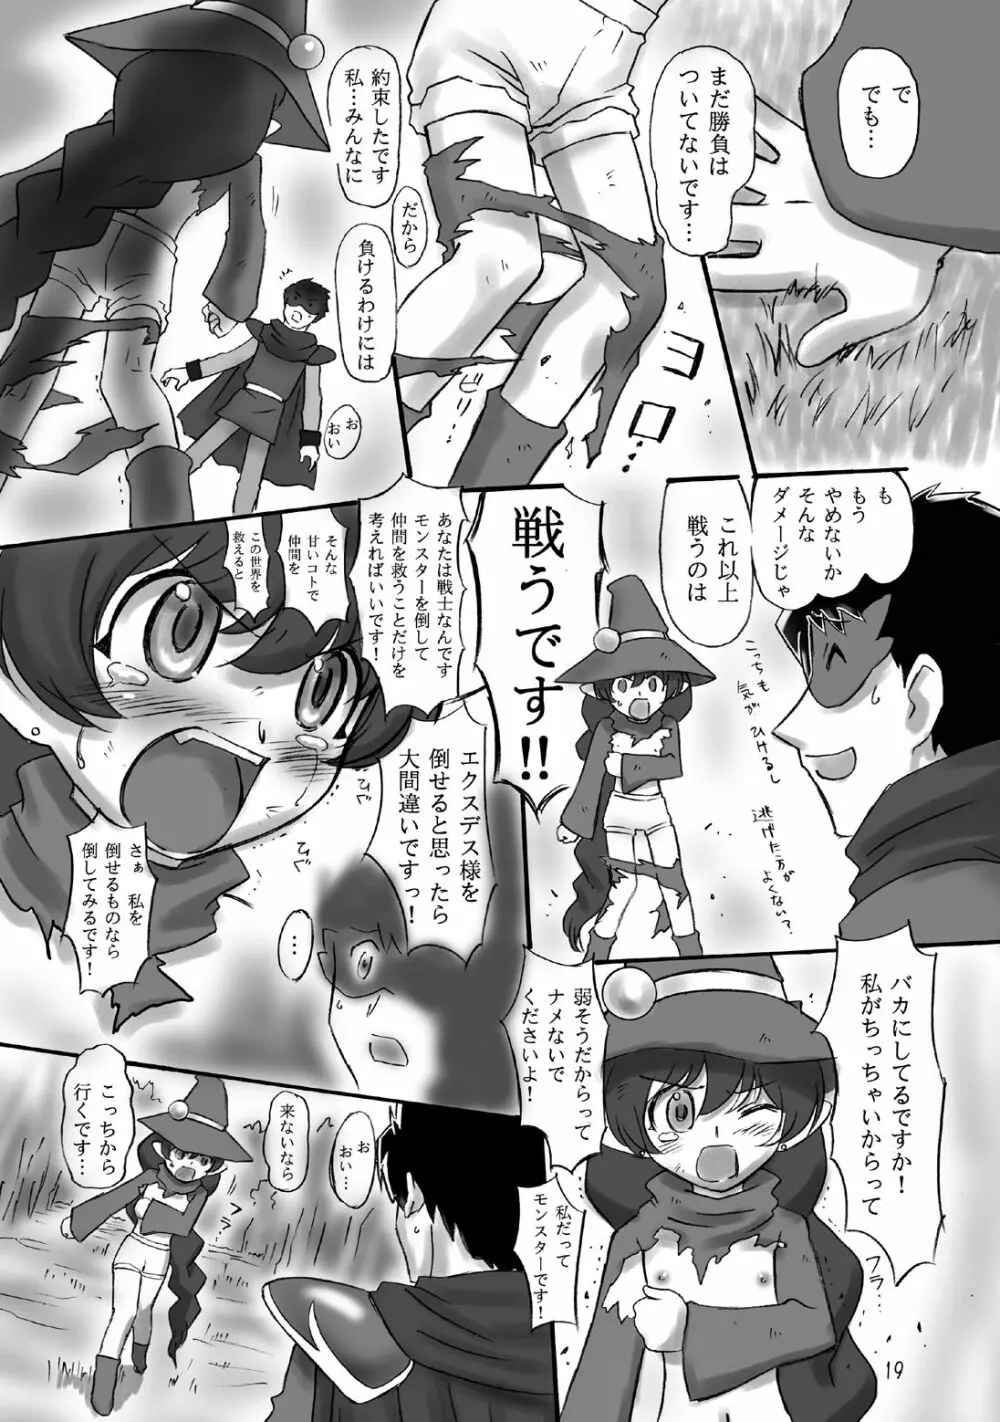 JOB☆STAR 10 19ページ